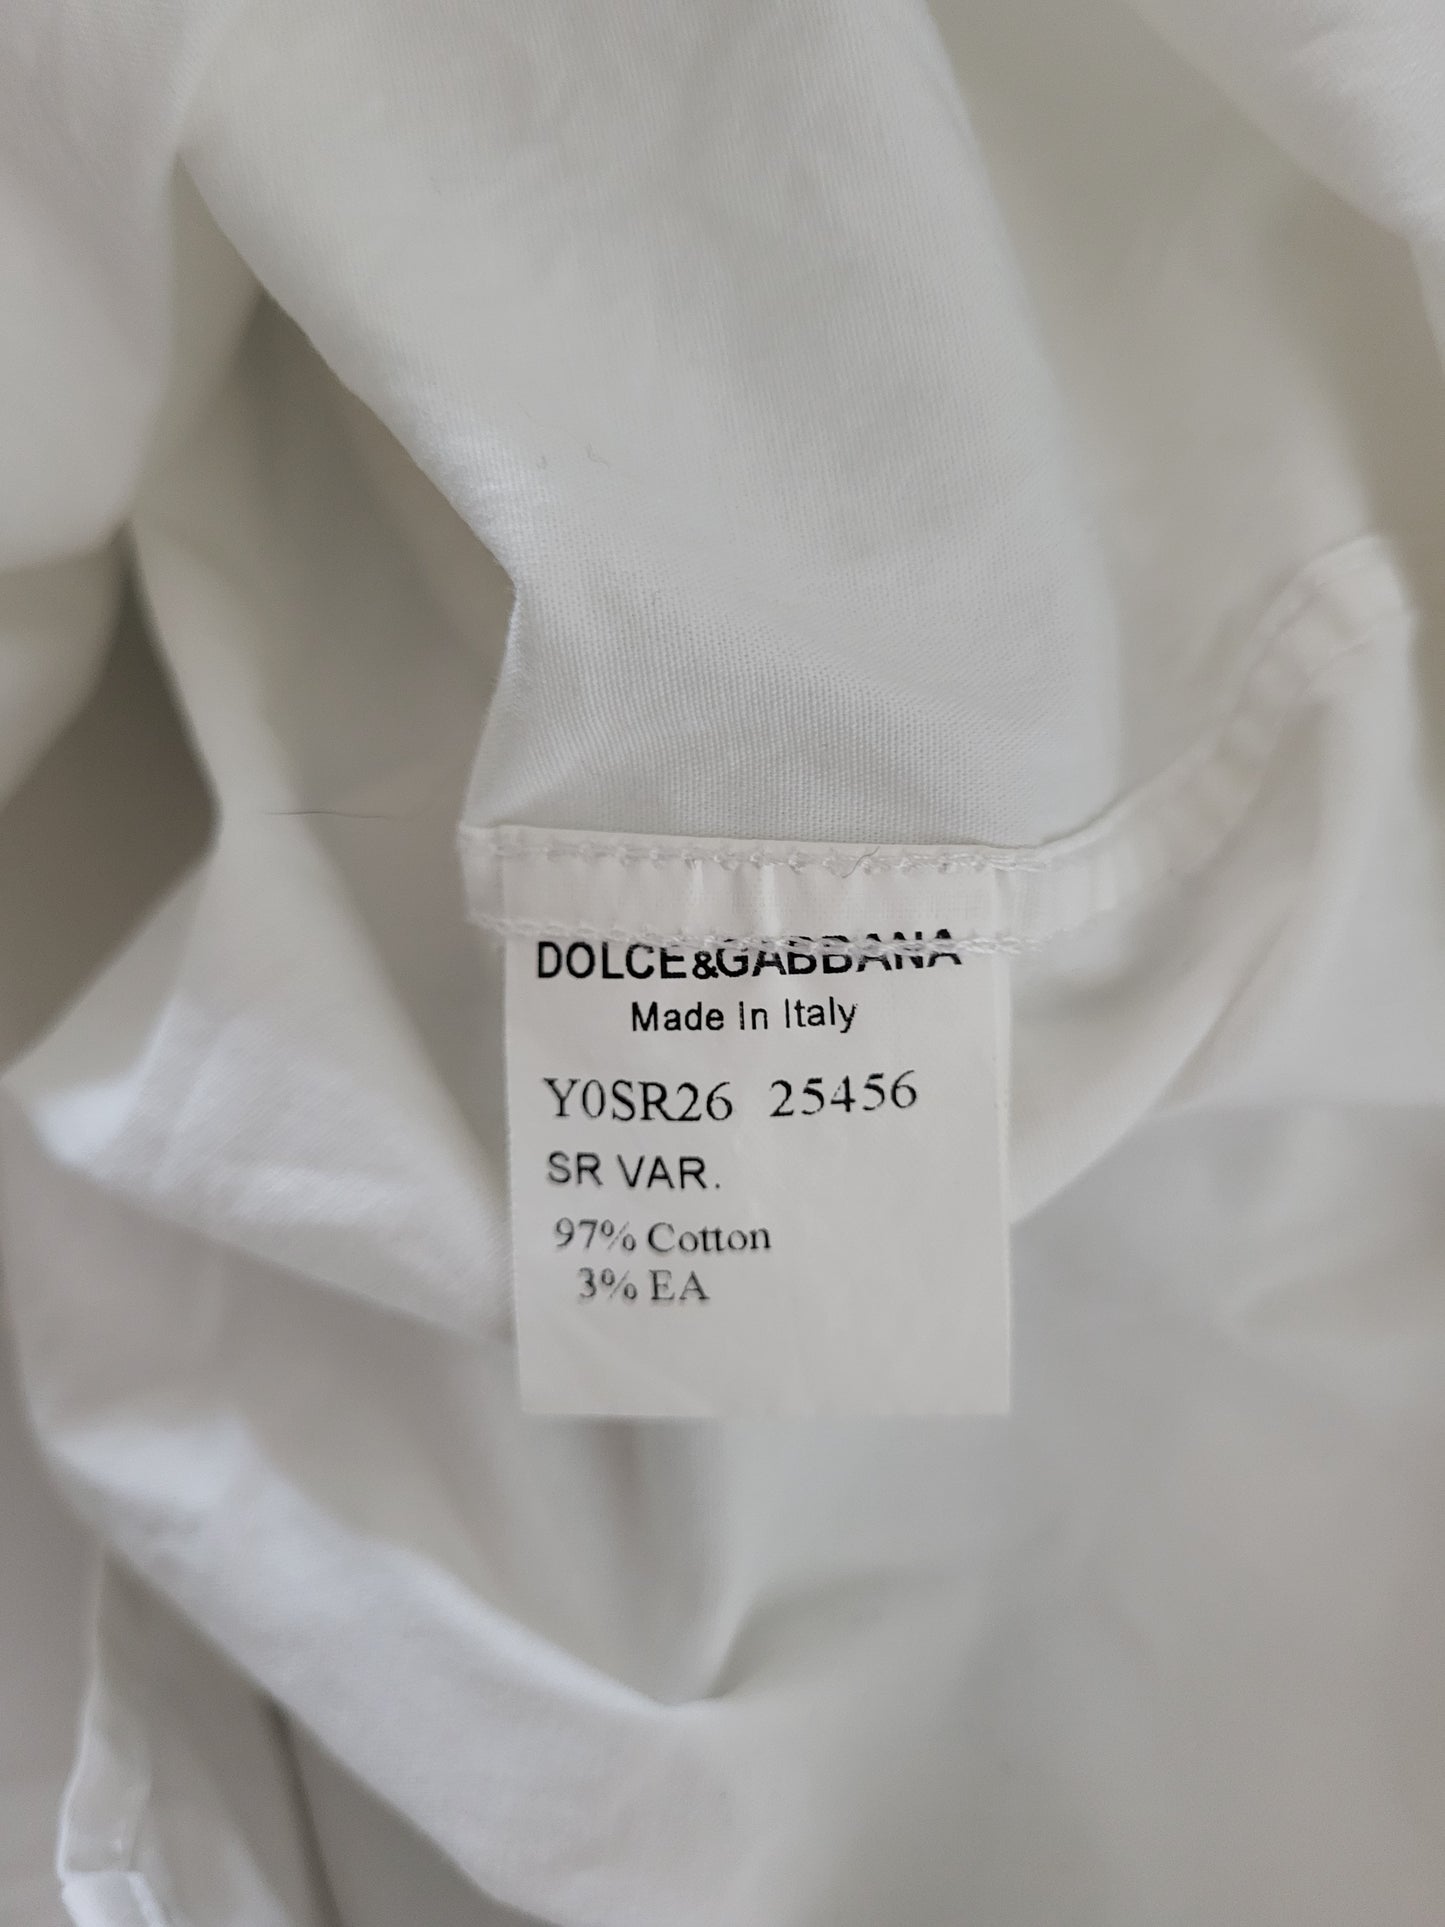 Dolce & Gabbana - Hemd - Klassisch - Weiß - Herren - L (44 17 1/2)